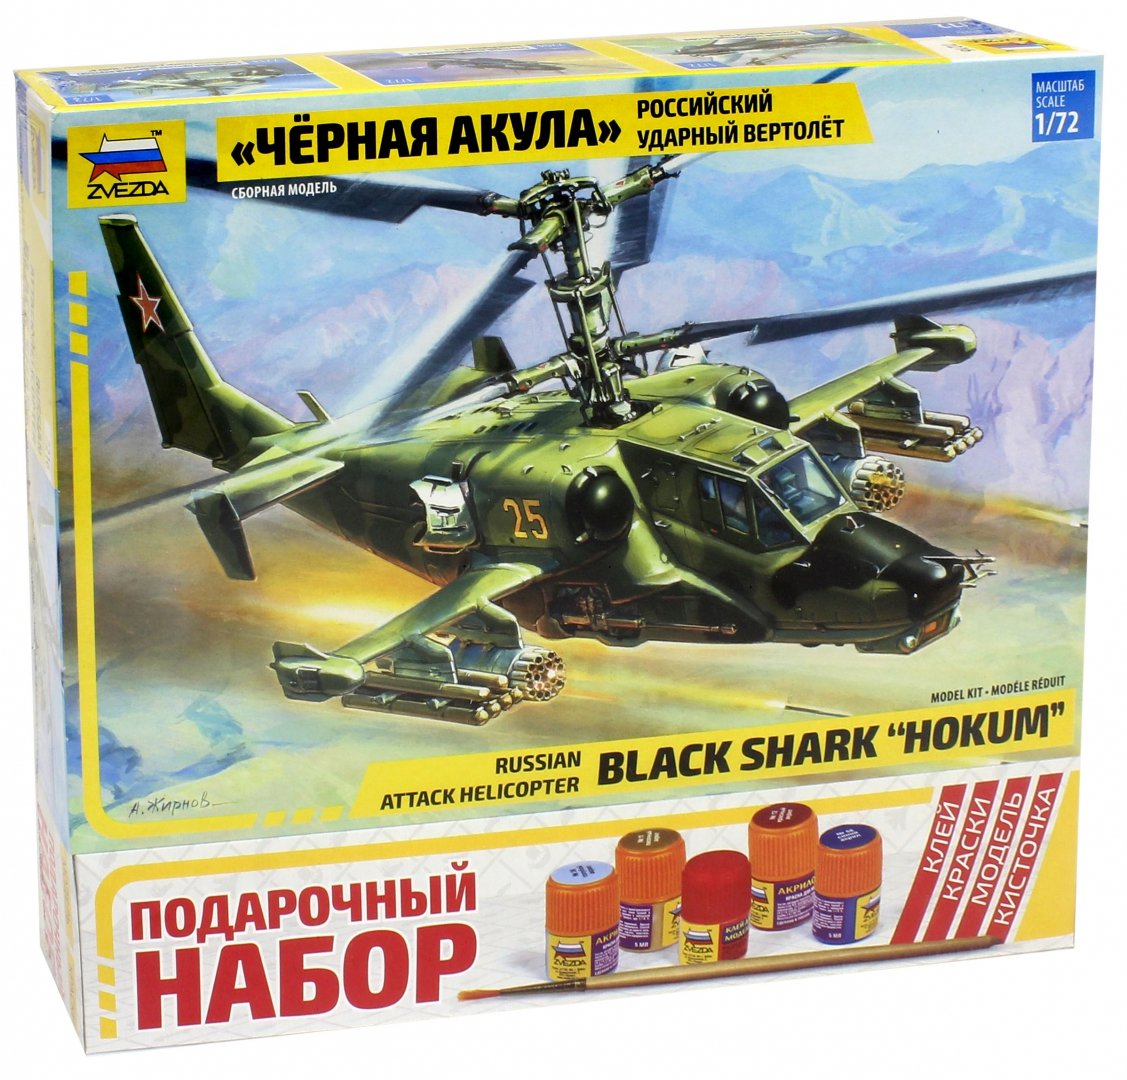 Иллюстрация 1 из 6 для 7216П/Российский вертолет Ка-50 "Черная акула" (М:1/72) | Лабиринт - игрушки. Источник: Лабиринт